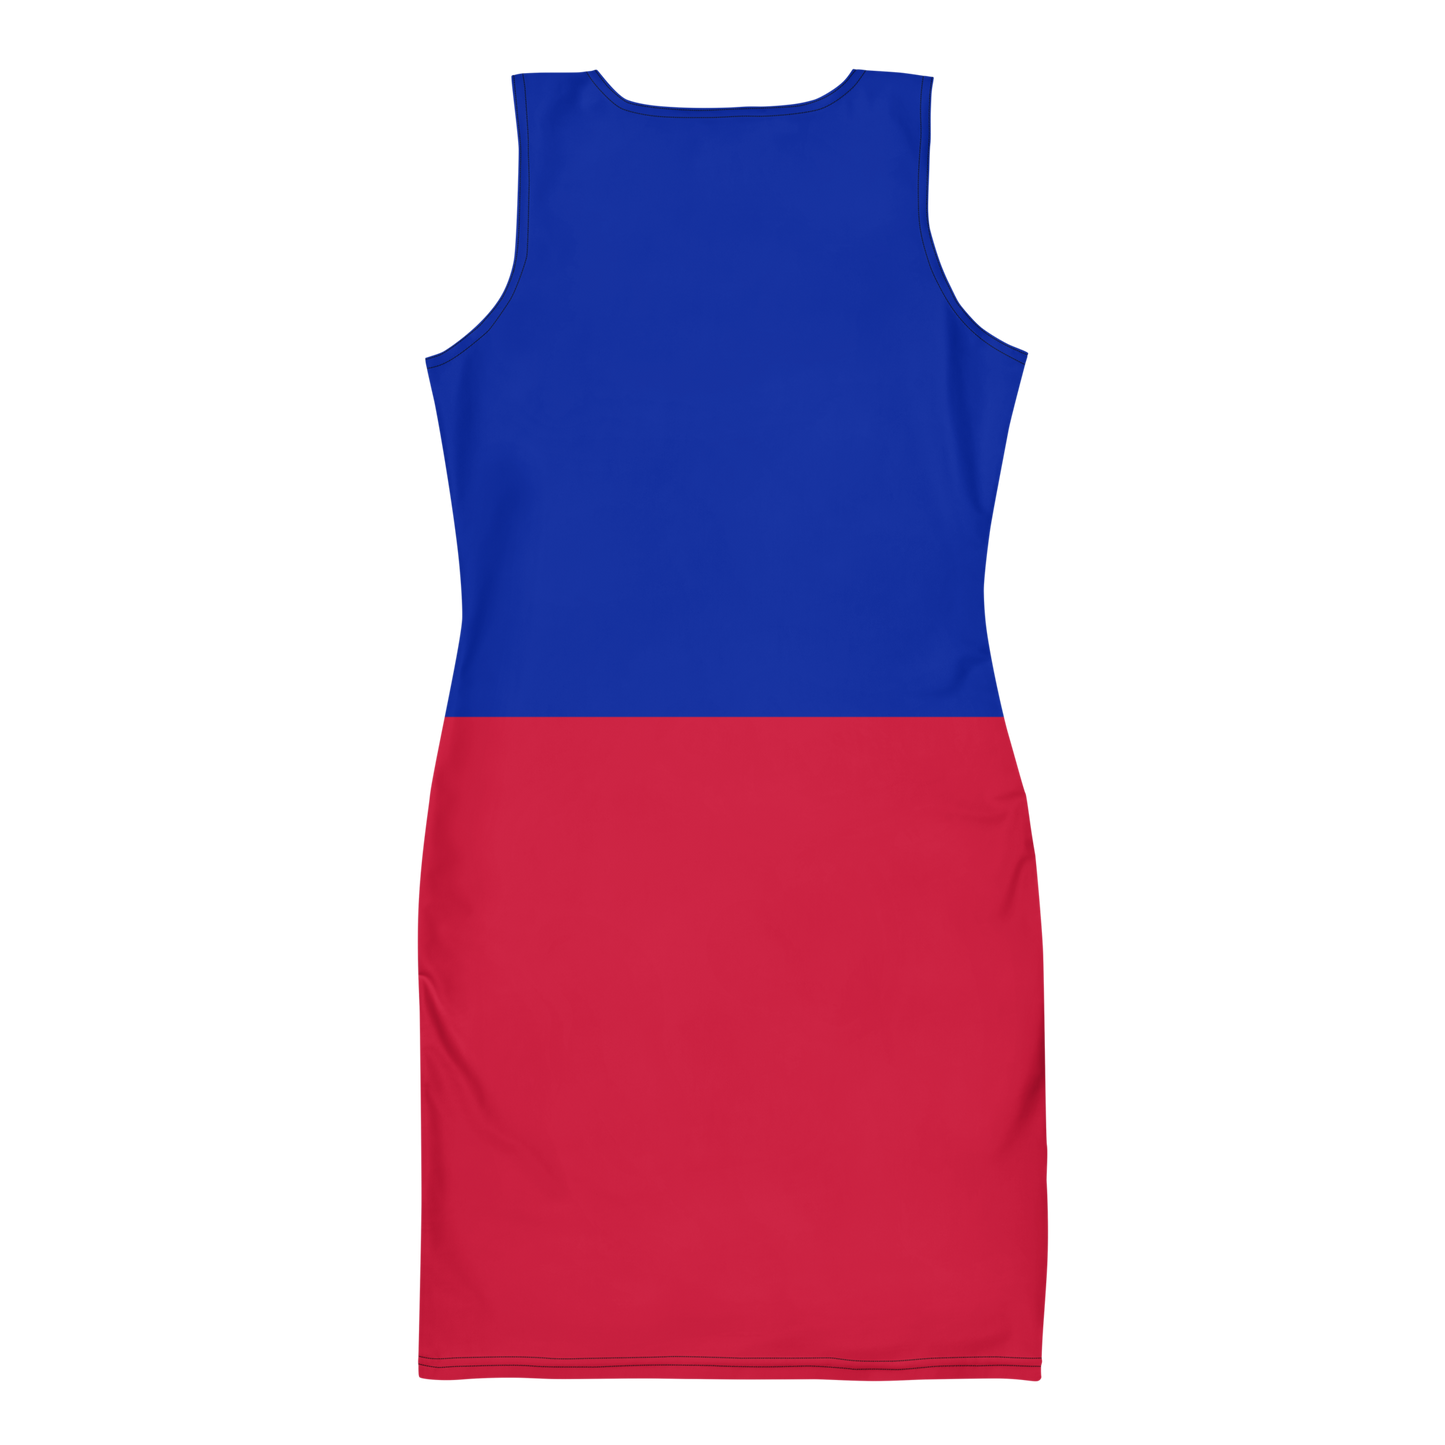 Haiti Dress